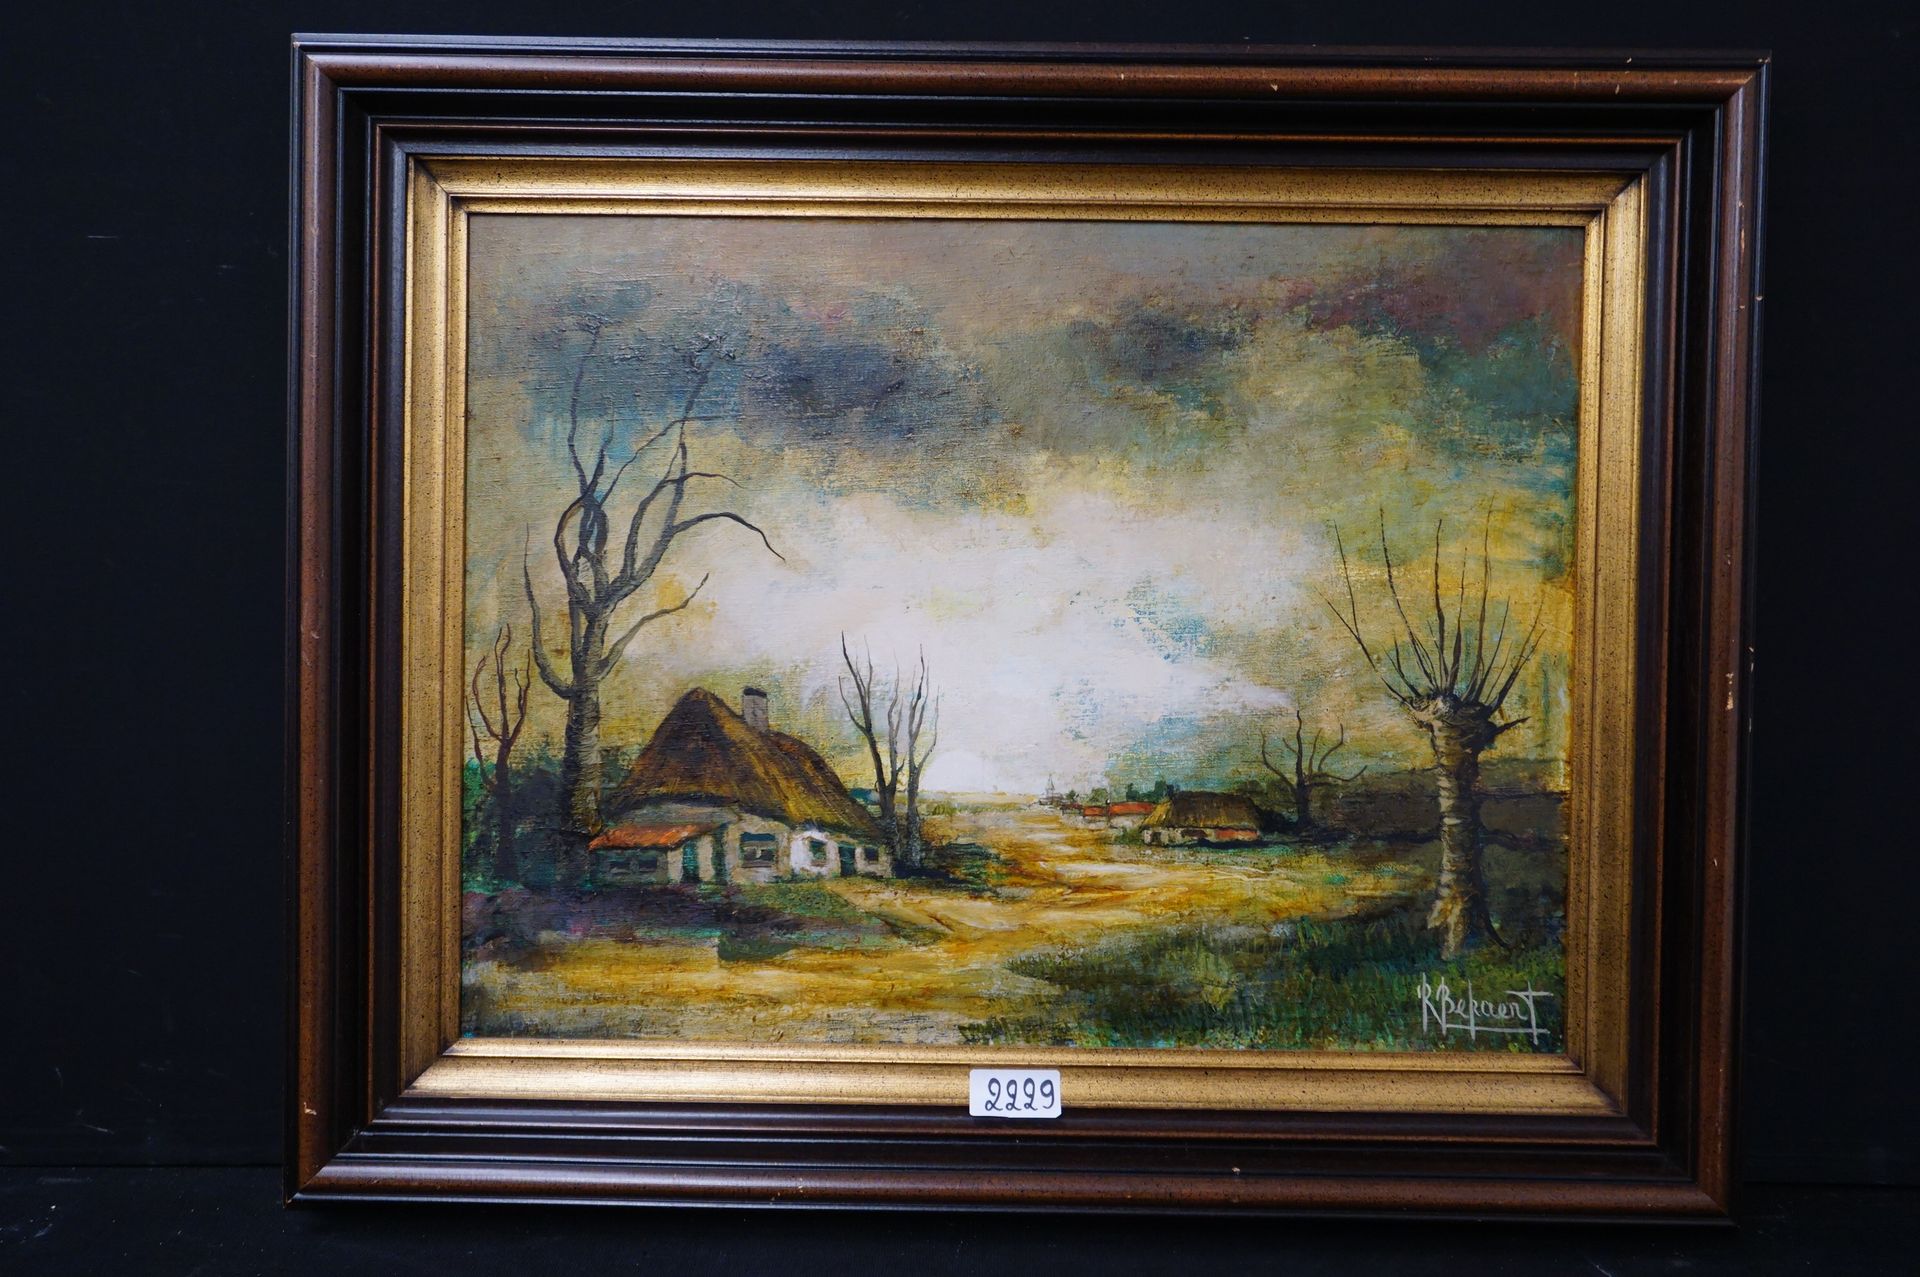 R. BEKAERT "Paysage avec des cottages" - Huile sur toile - Signé - 60 x 80 cm